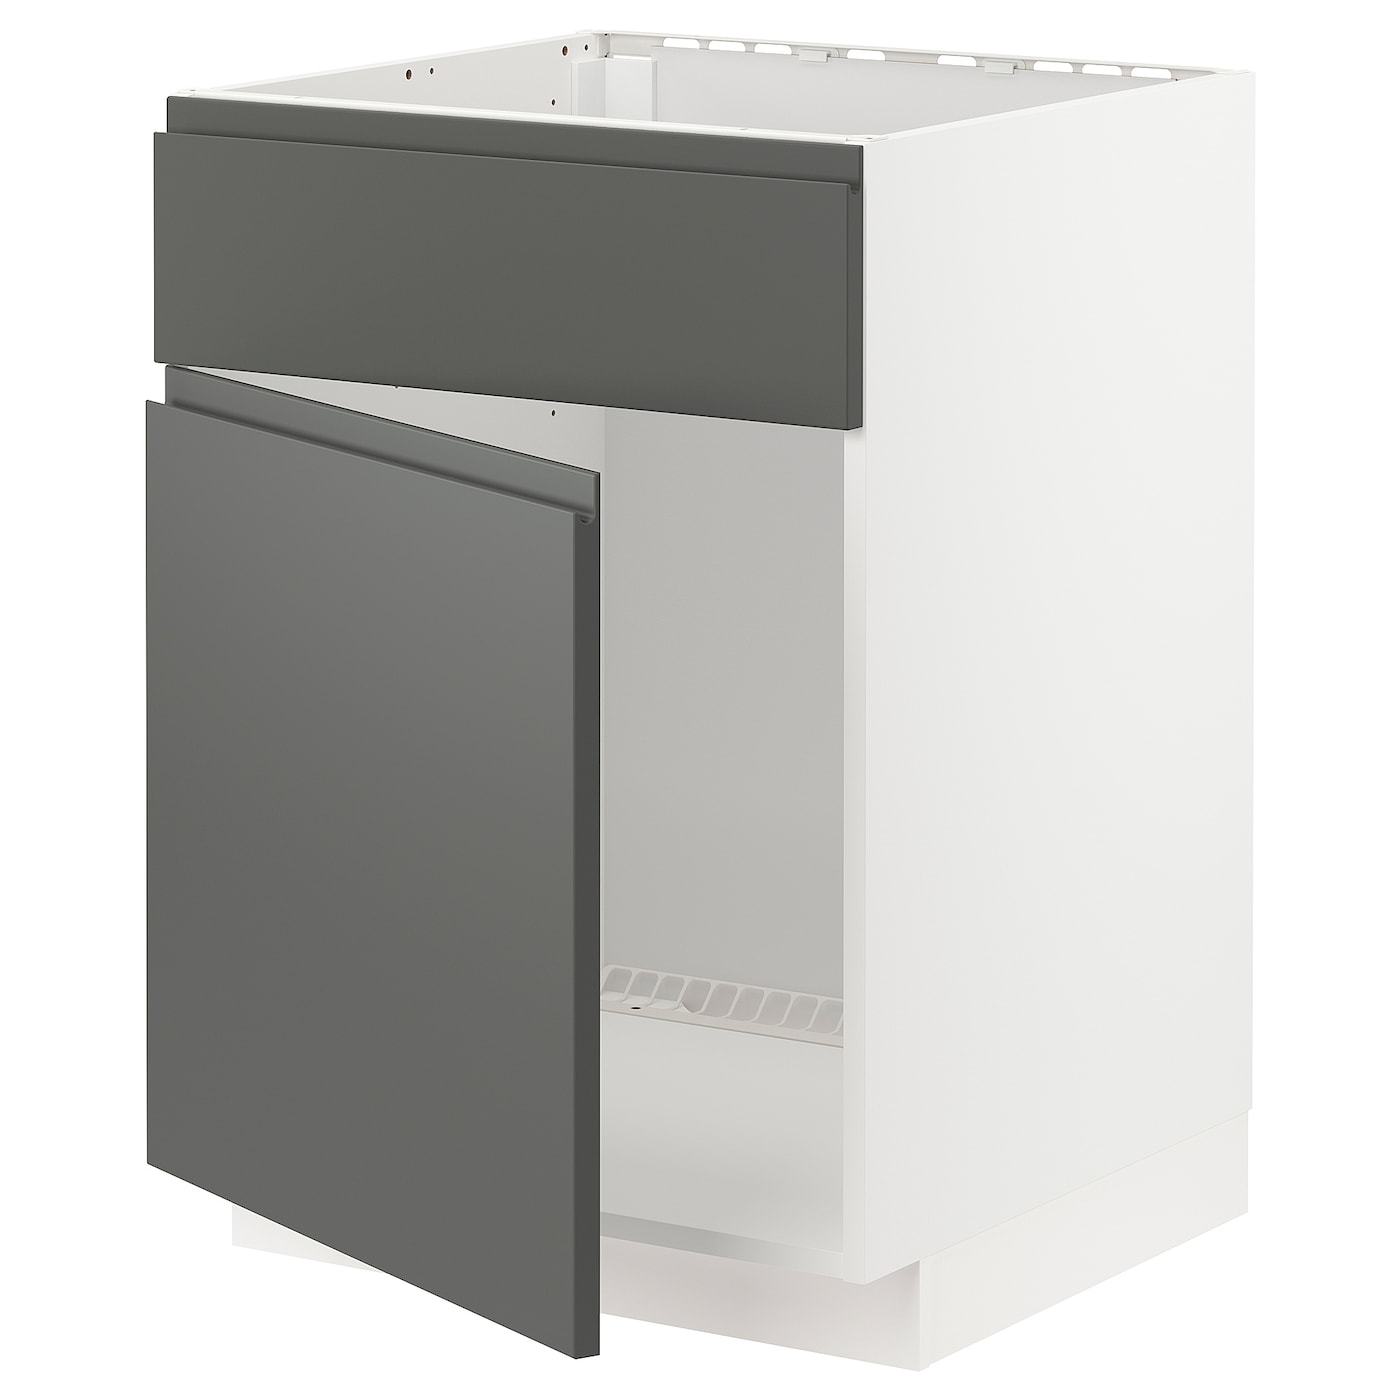 Напольный шкаф - IKEA METOD, 88x62x60см, белый/серый, МЕТОД ИКЕА